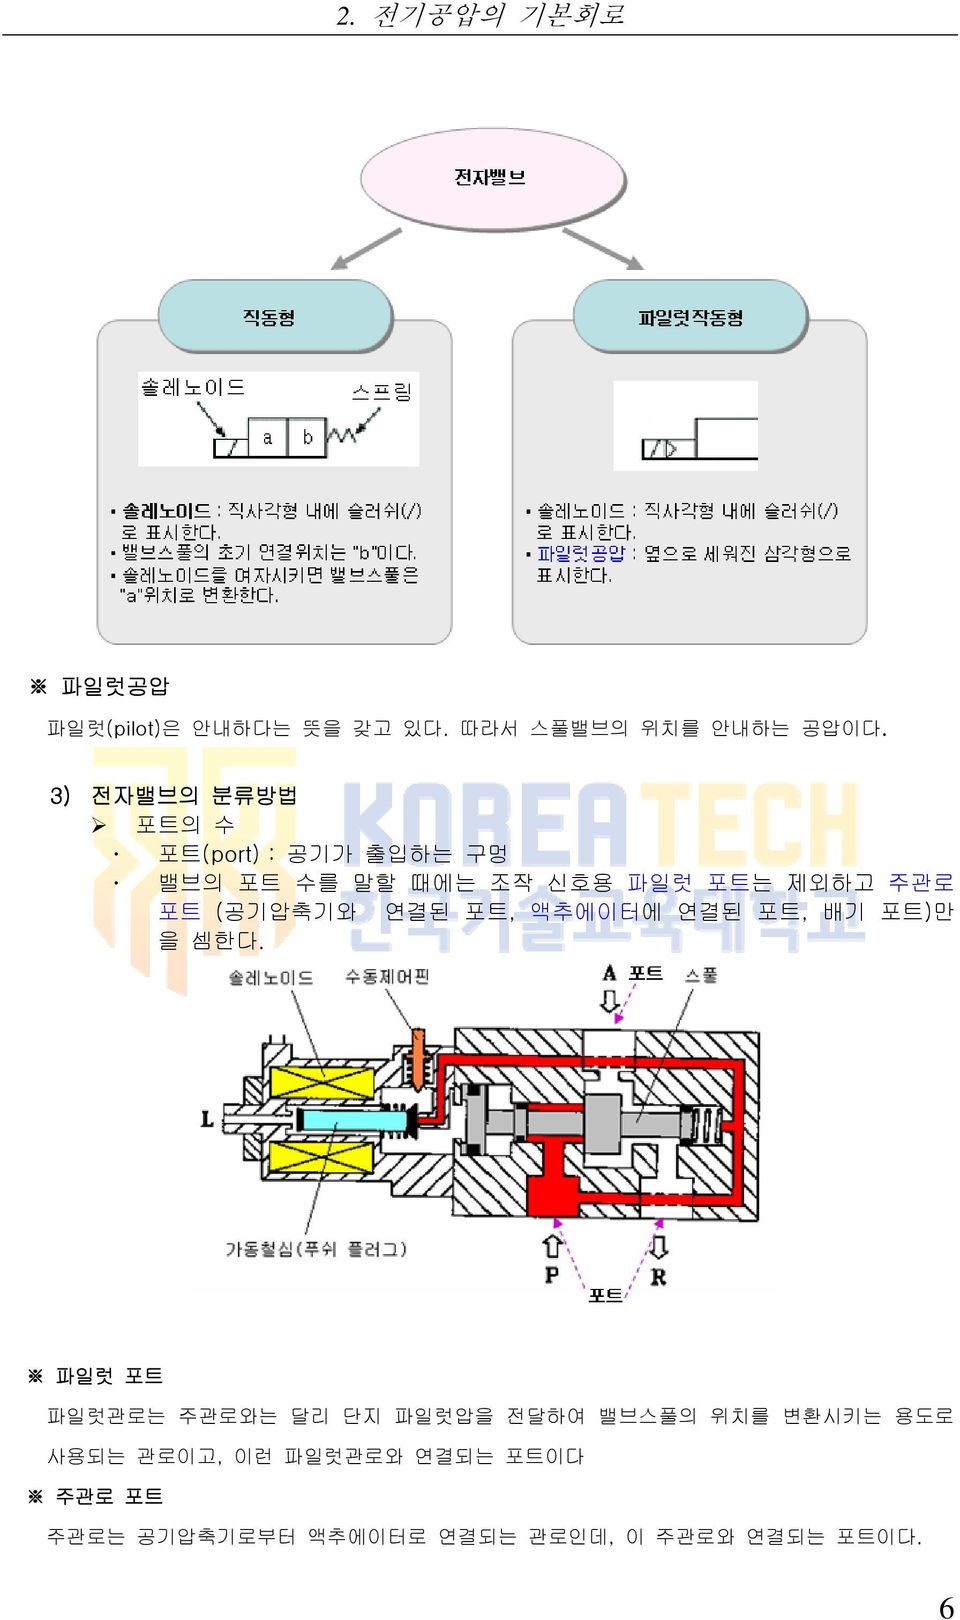 (공기압축기와 연결된 포트, 액추에이터에 연결된 포트, 배기 포트)만 을 셈한다.